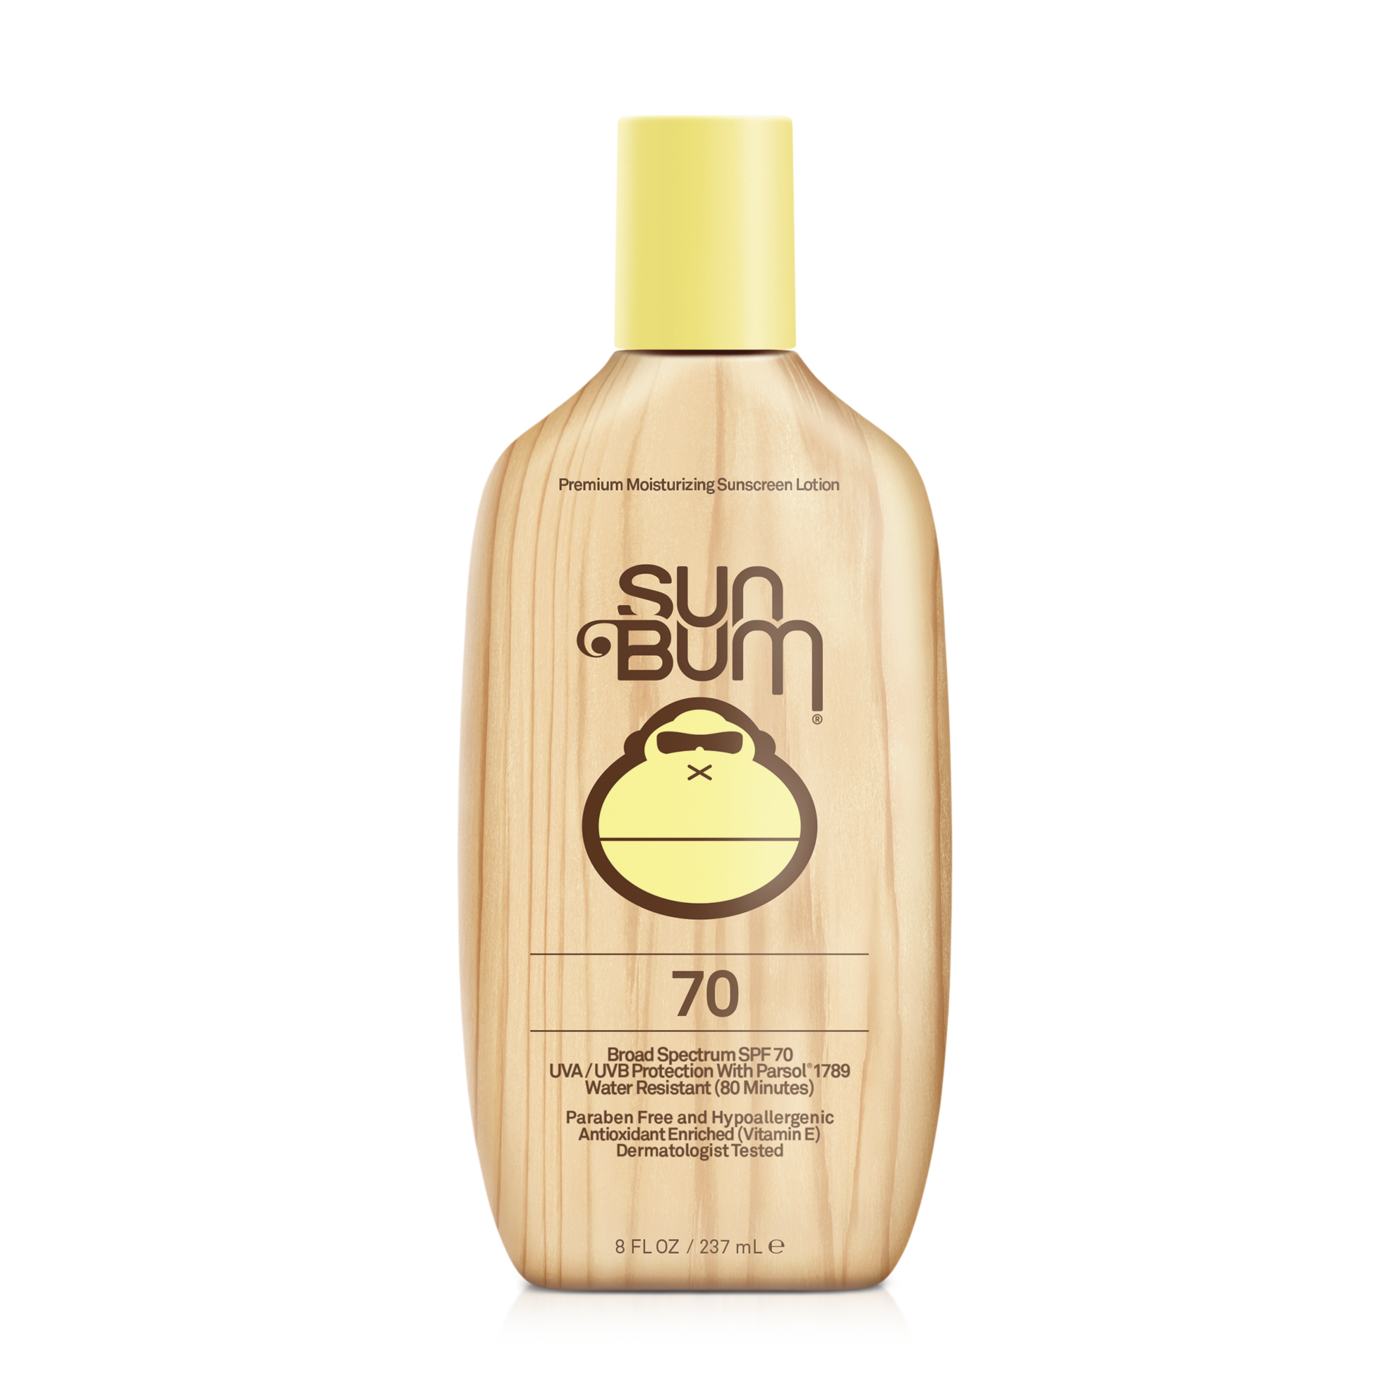 Sun Bum Sunscreen Lotion 70 SPF